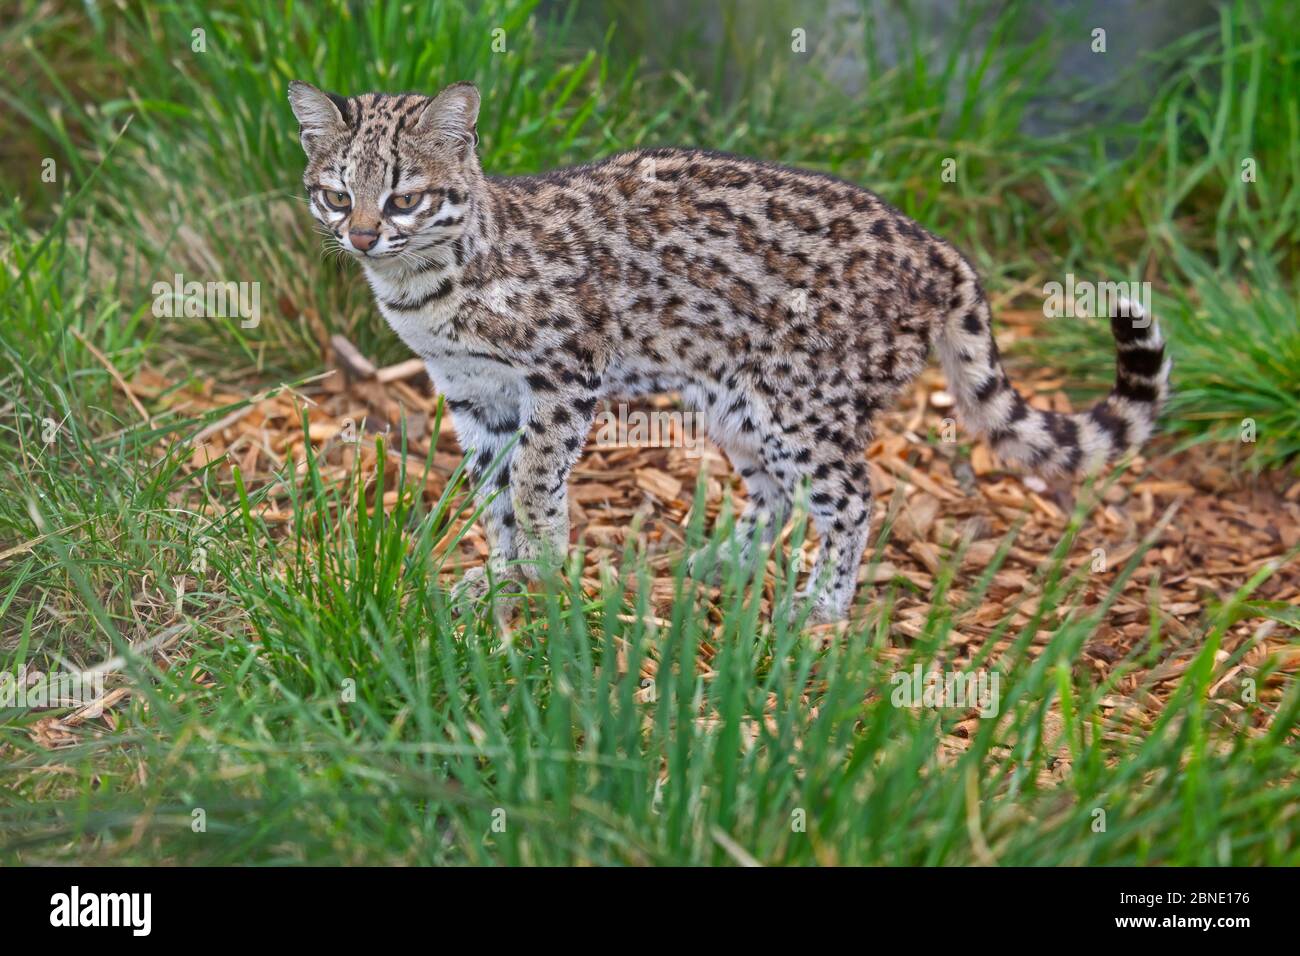 Maschio piccolo macchiato gatto / Oncilla (Leopardus tirinus) prigioniero, si verifica in Sud America, specie vulnerabili. Foto Stock